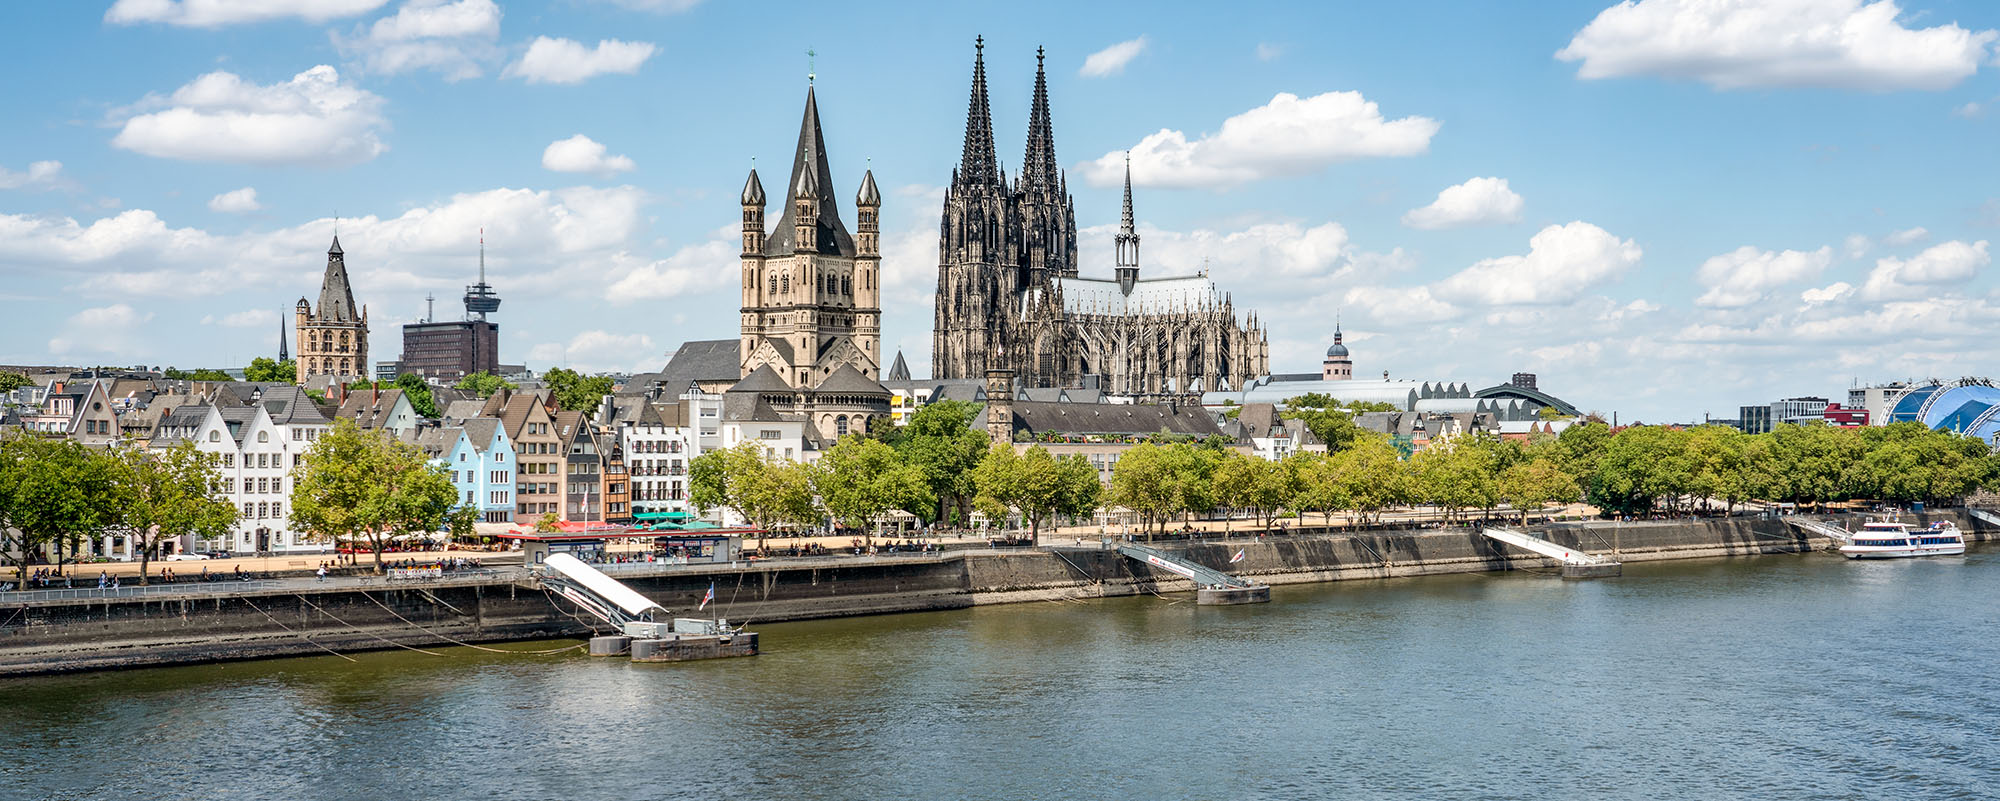 Rheinufer Köln